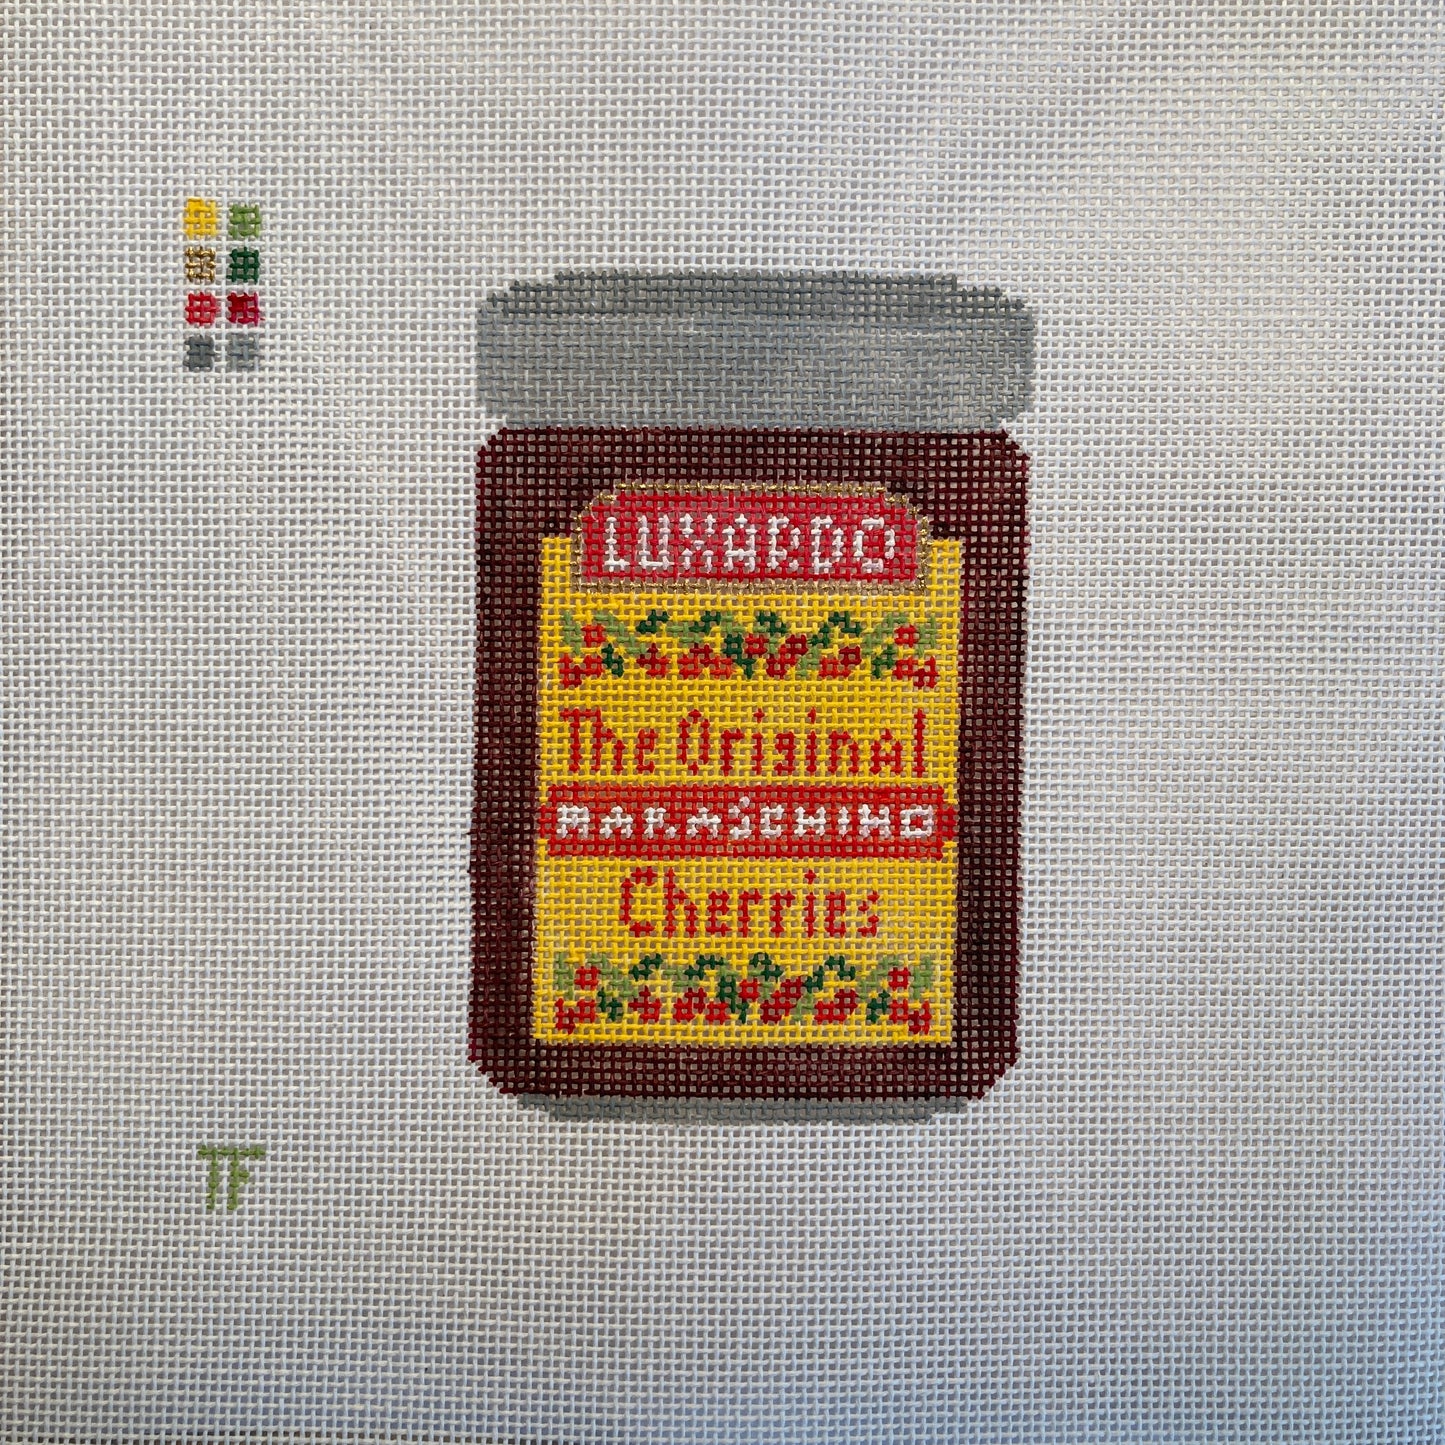 Luxardo Cherries